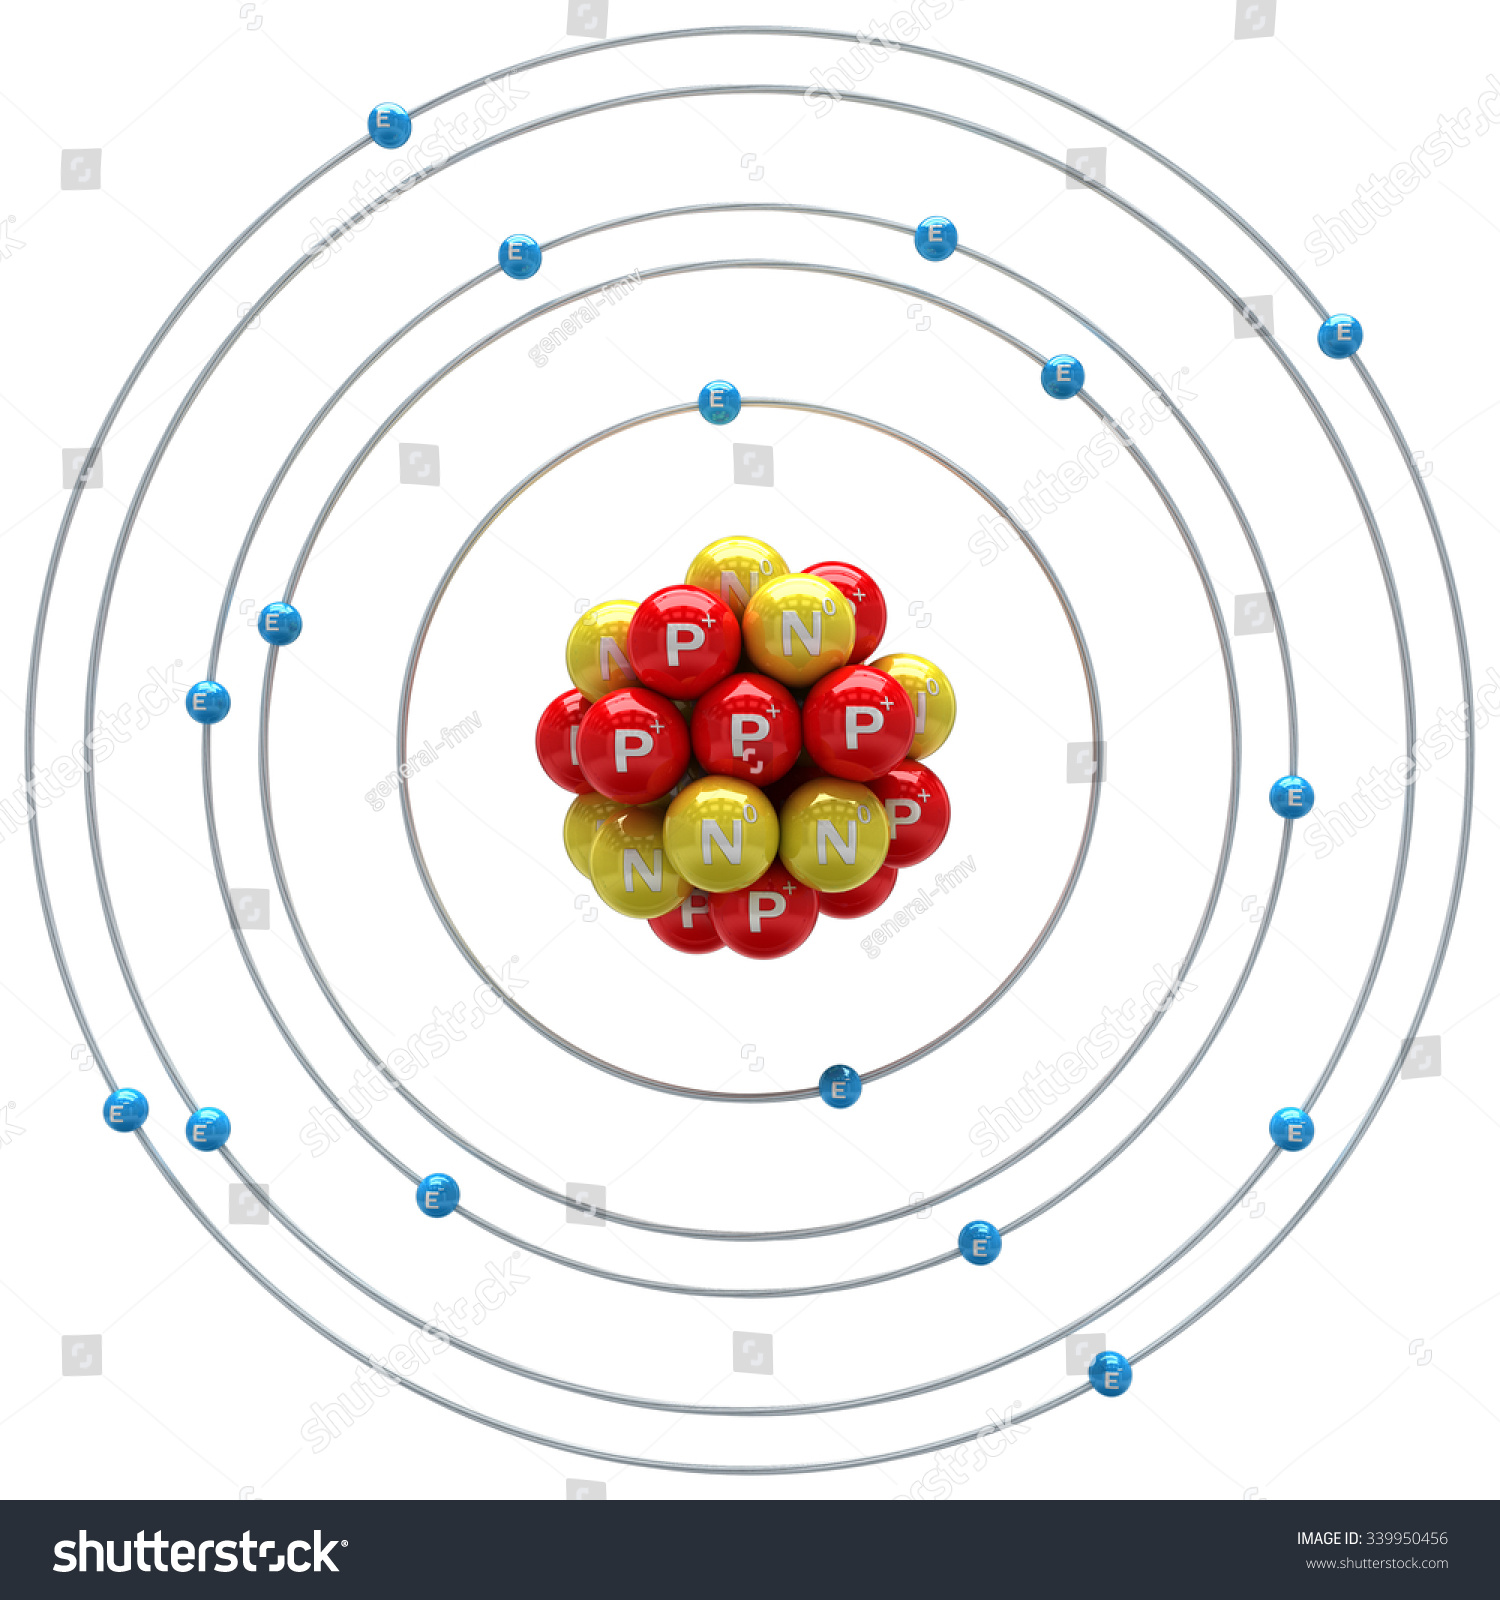 Sulfur Atom On White Background Stock Illustration 339950456 - Shutterstock